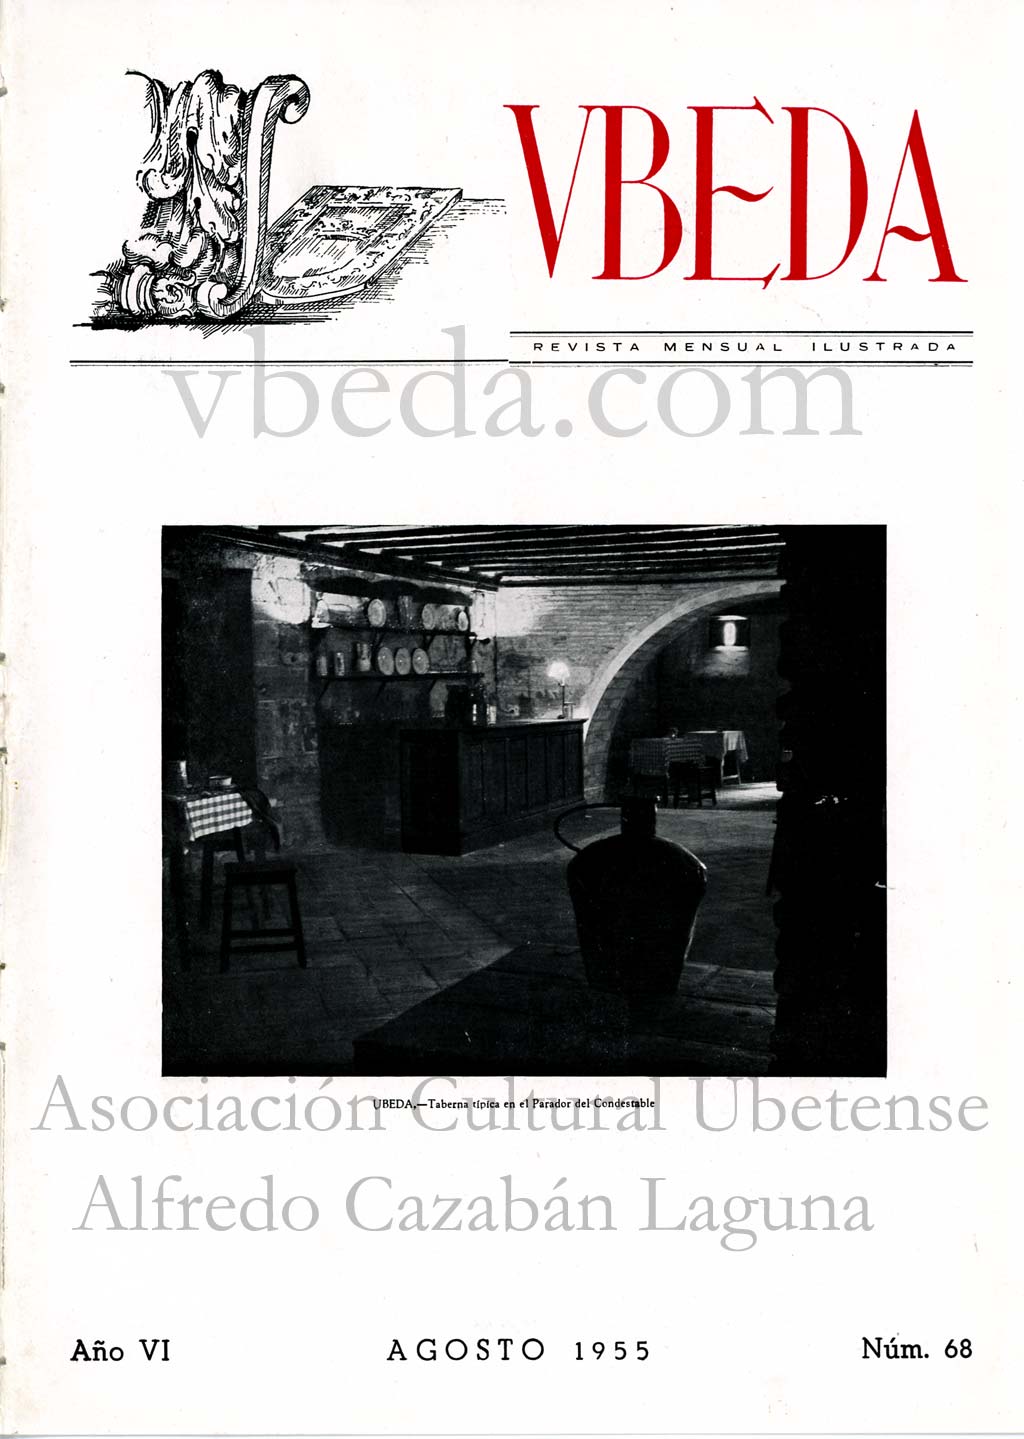 Revista Vbeda. Ao 6. N 68 de agosto de 1955